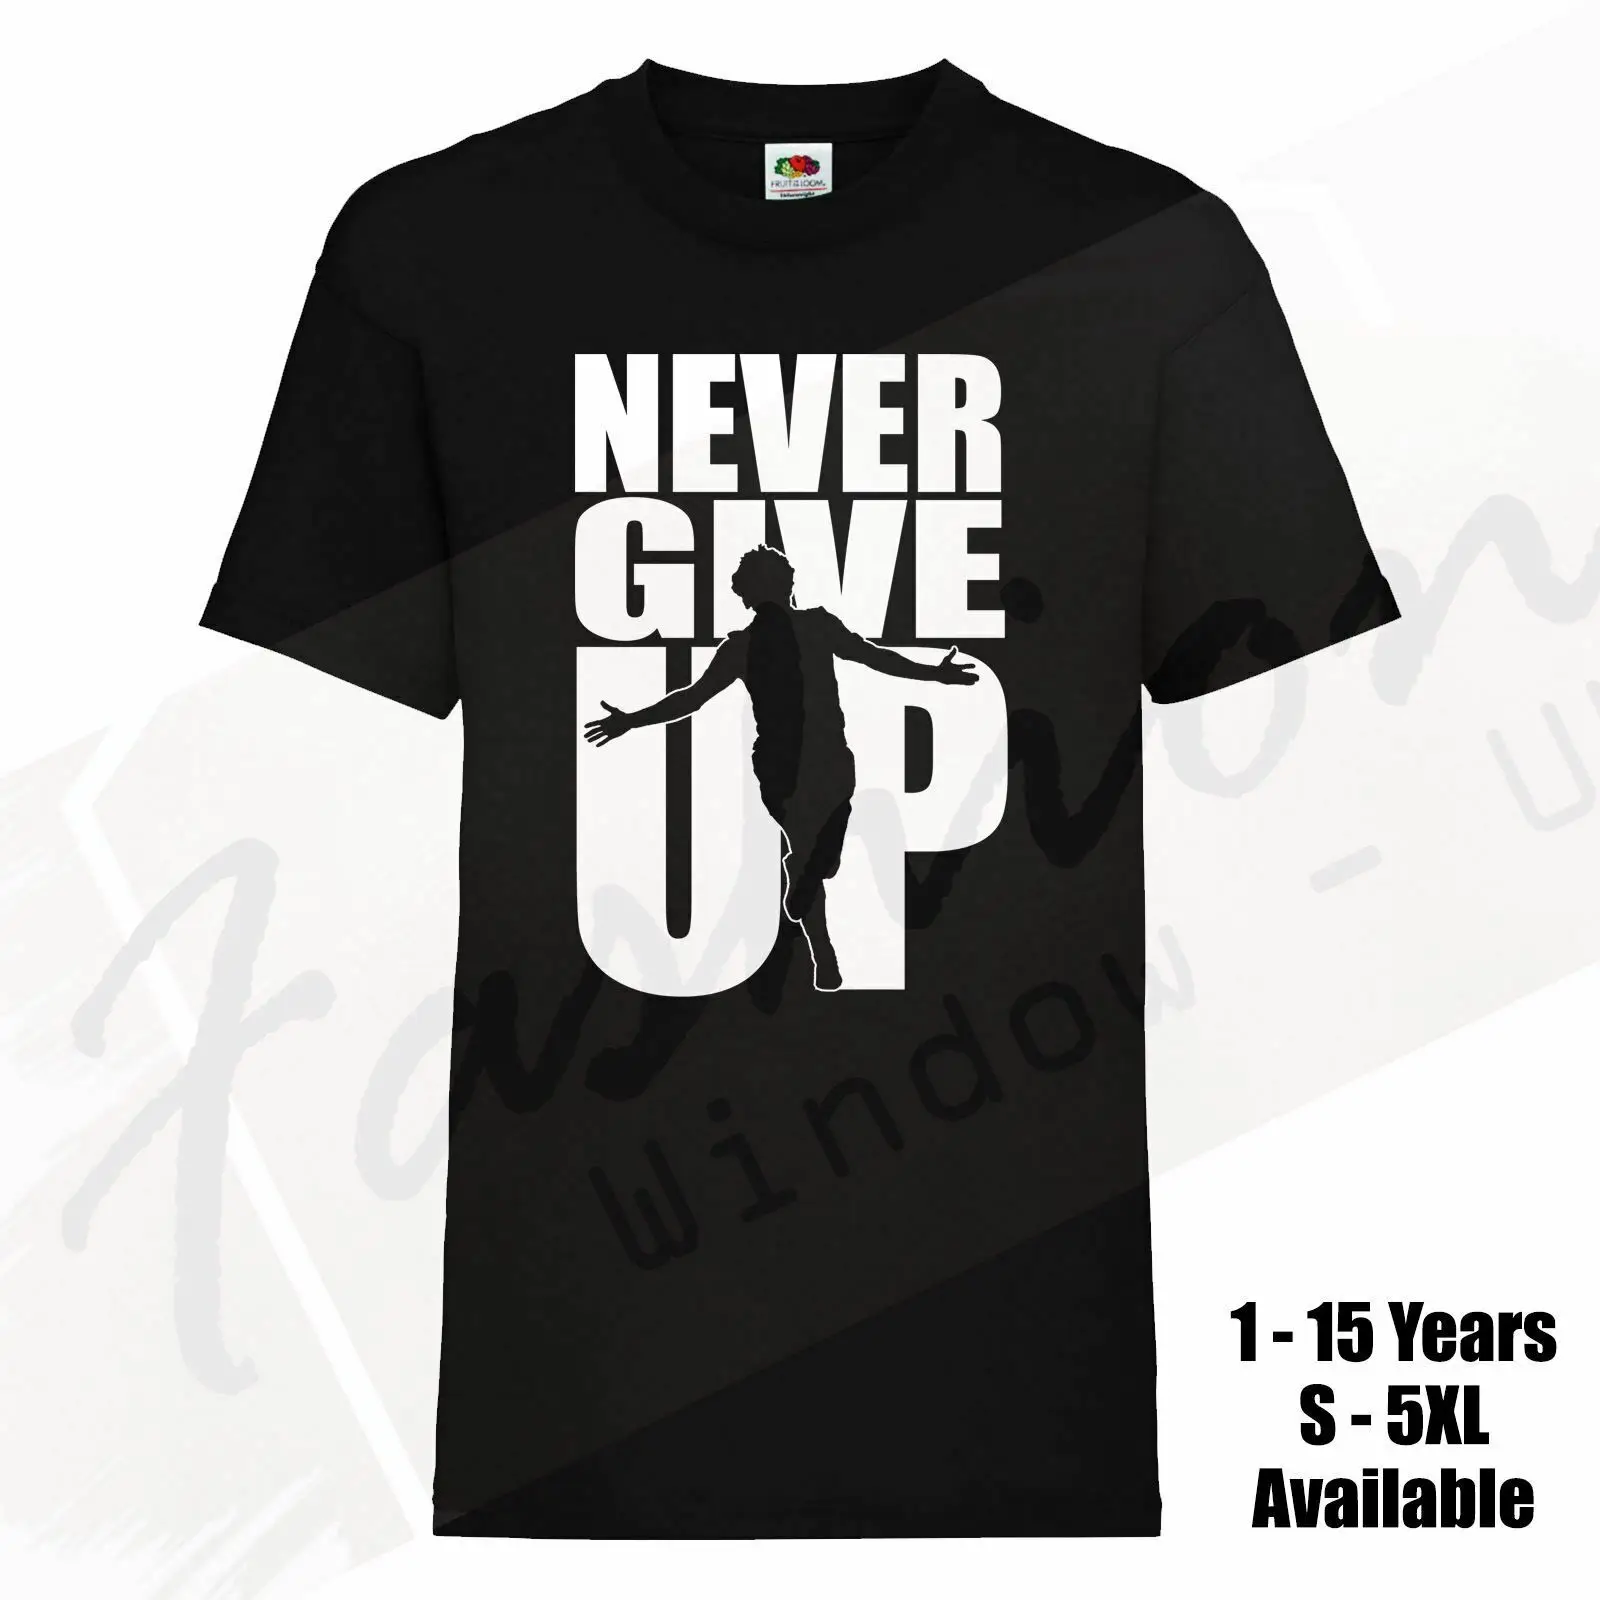 Футболка с надписью «Never Give Up» для взрослых и детей 2019 года; модная футболка унисекс для мужчин и женщин; Бесплатная доставка